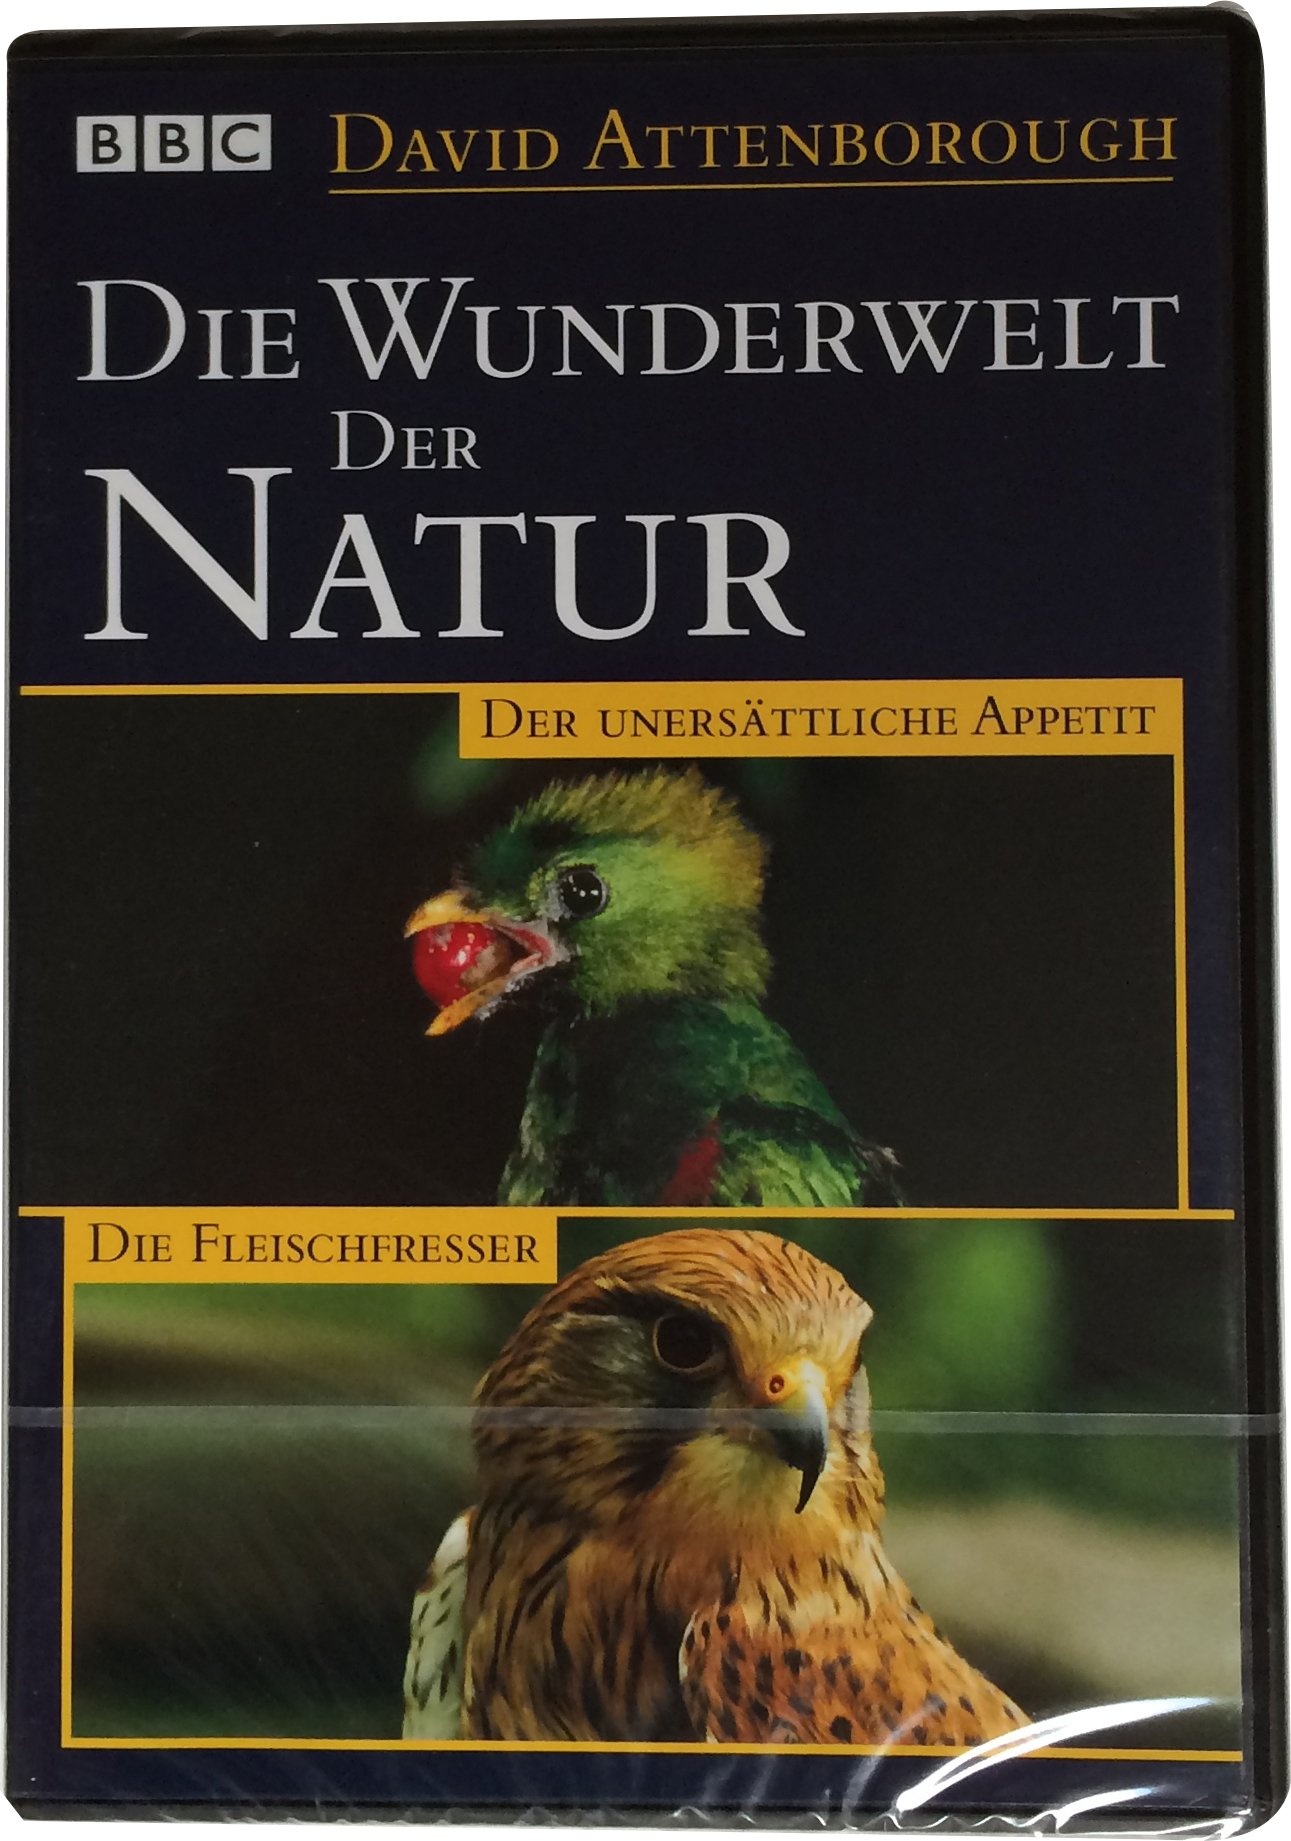 David Attenborough DIE WUNDERWELT DER NATUR "Der unersättliche Appetit" und "Die Fleischfresser" (aus der Serie: "Das Leben der Vögel"), Weltbild DVD, 1998, Laufzeit 90' (Neu differenzbesteuert)